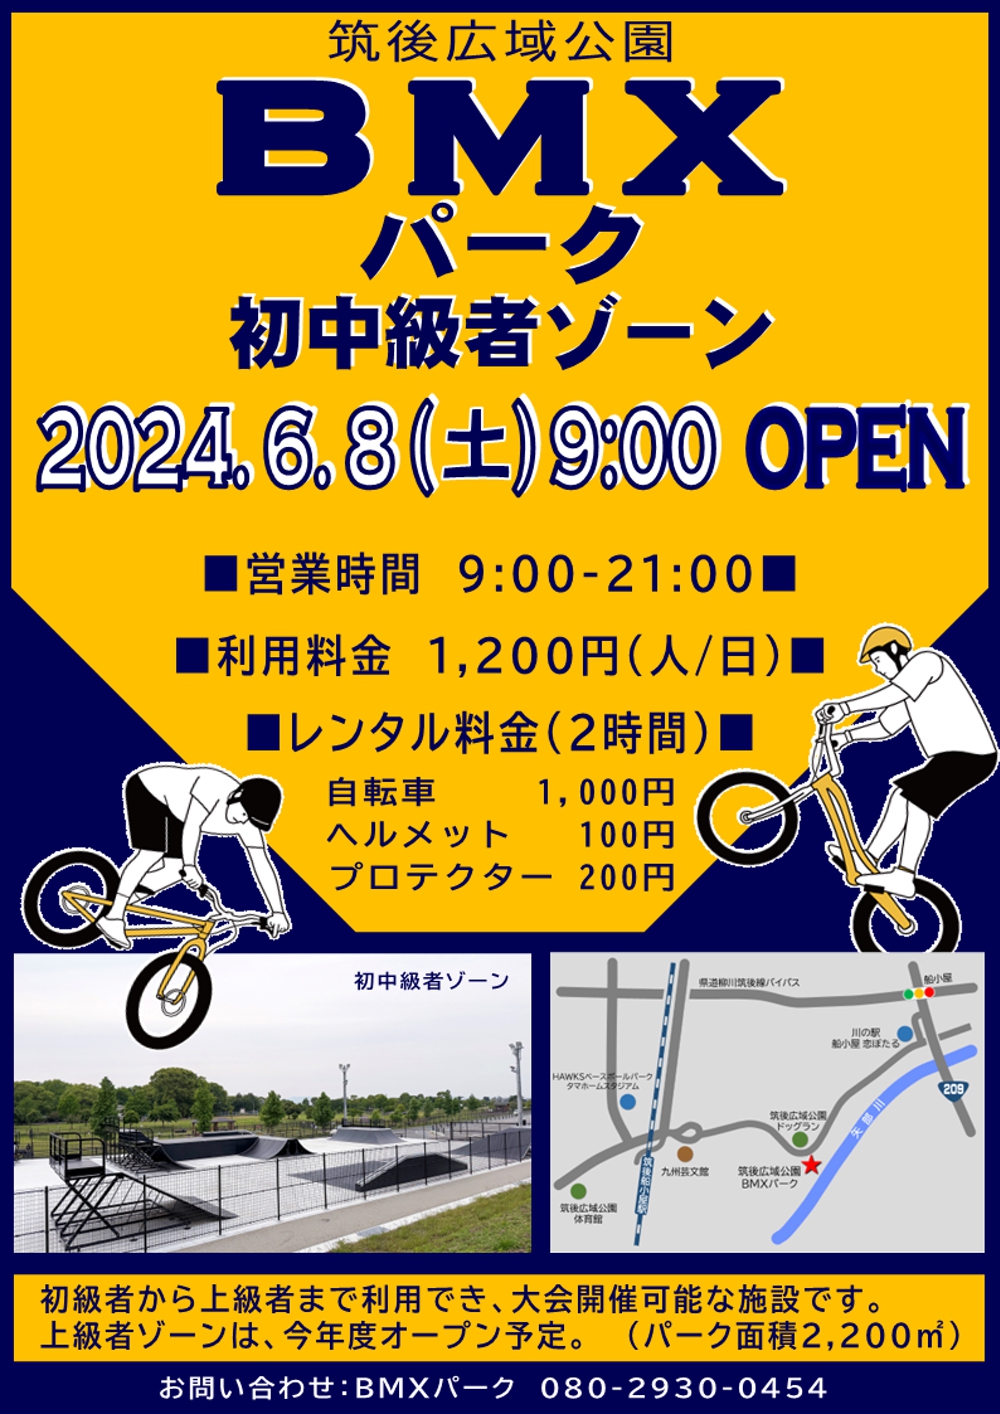 筑後広域公園BMXパーク 九州初の公設BMX専用パークが6月8日オープン【筑後市】